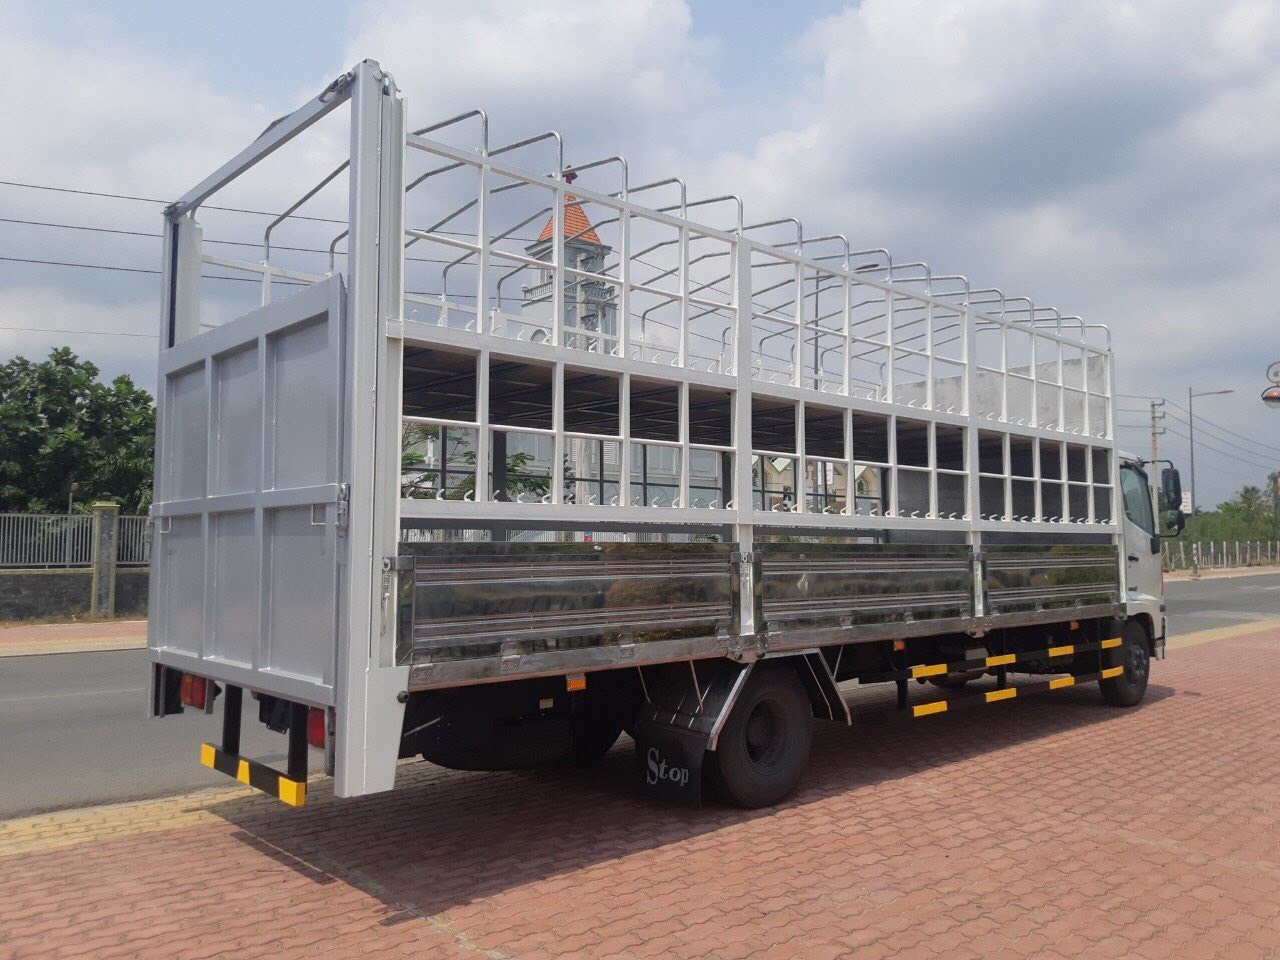 Hino FC9JLTC chở xe máy tải trọng 4.5 tấn